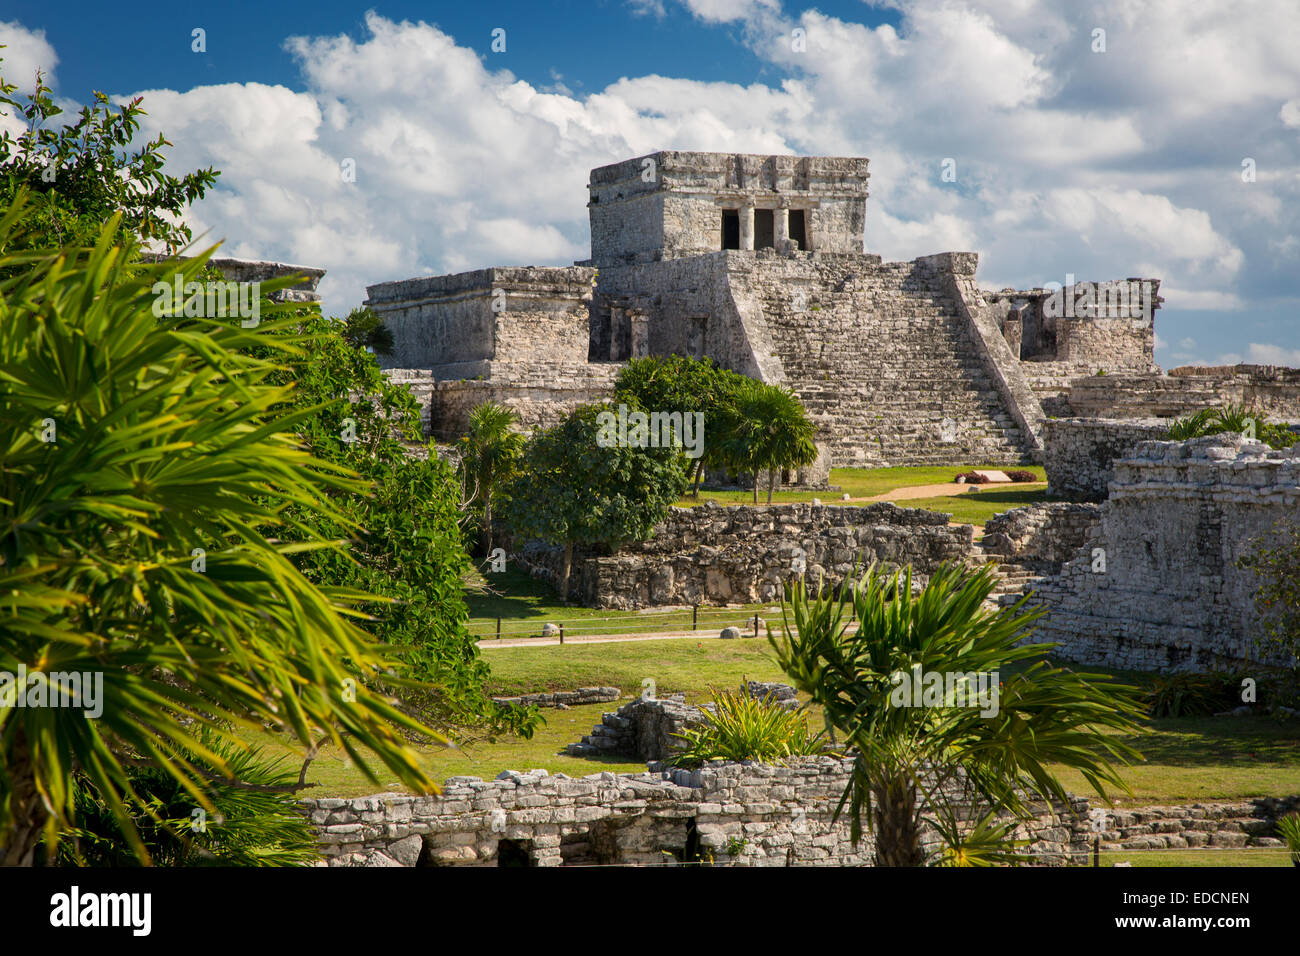 Ruines du temple maya à Tulum, Yucatan, Mexique Banque D'Images